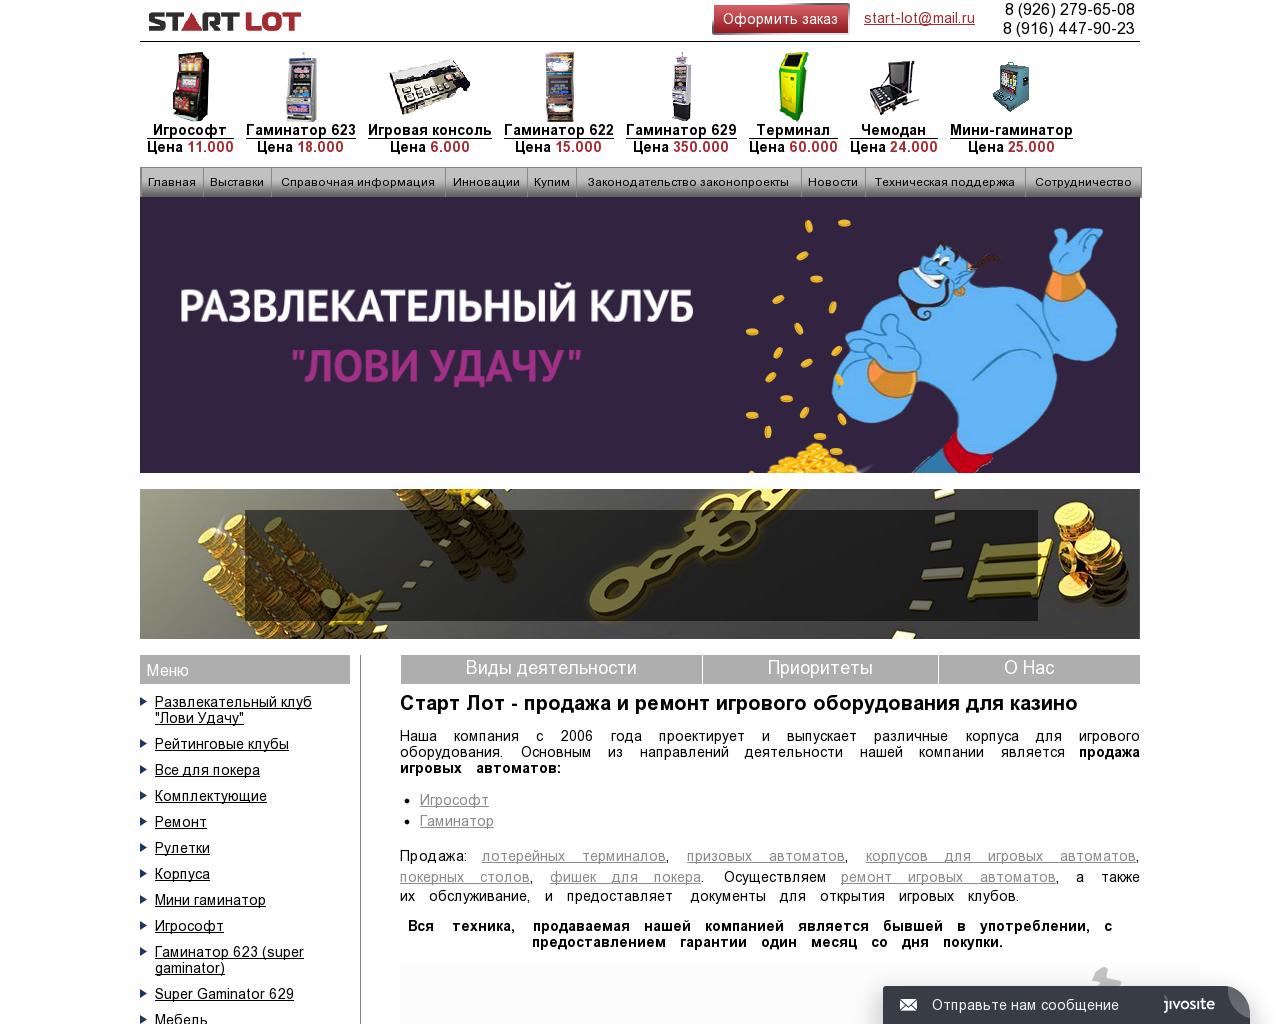 Изображение сайта start-lot.ru в разрешении 1280x1024